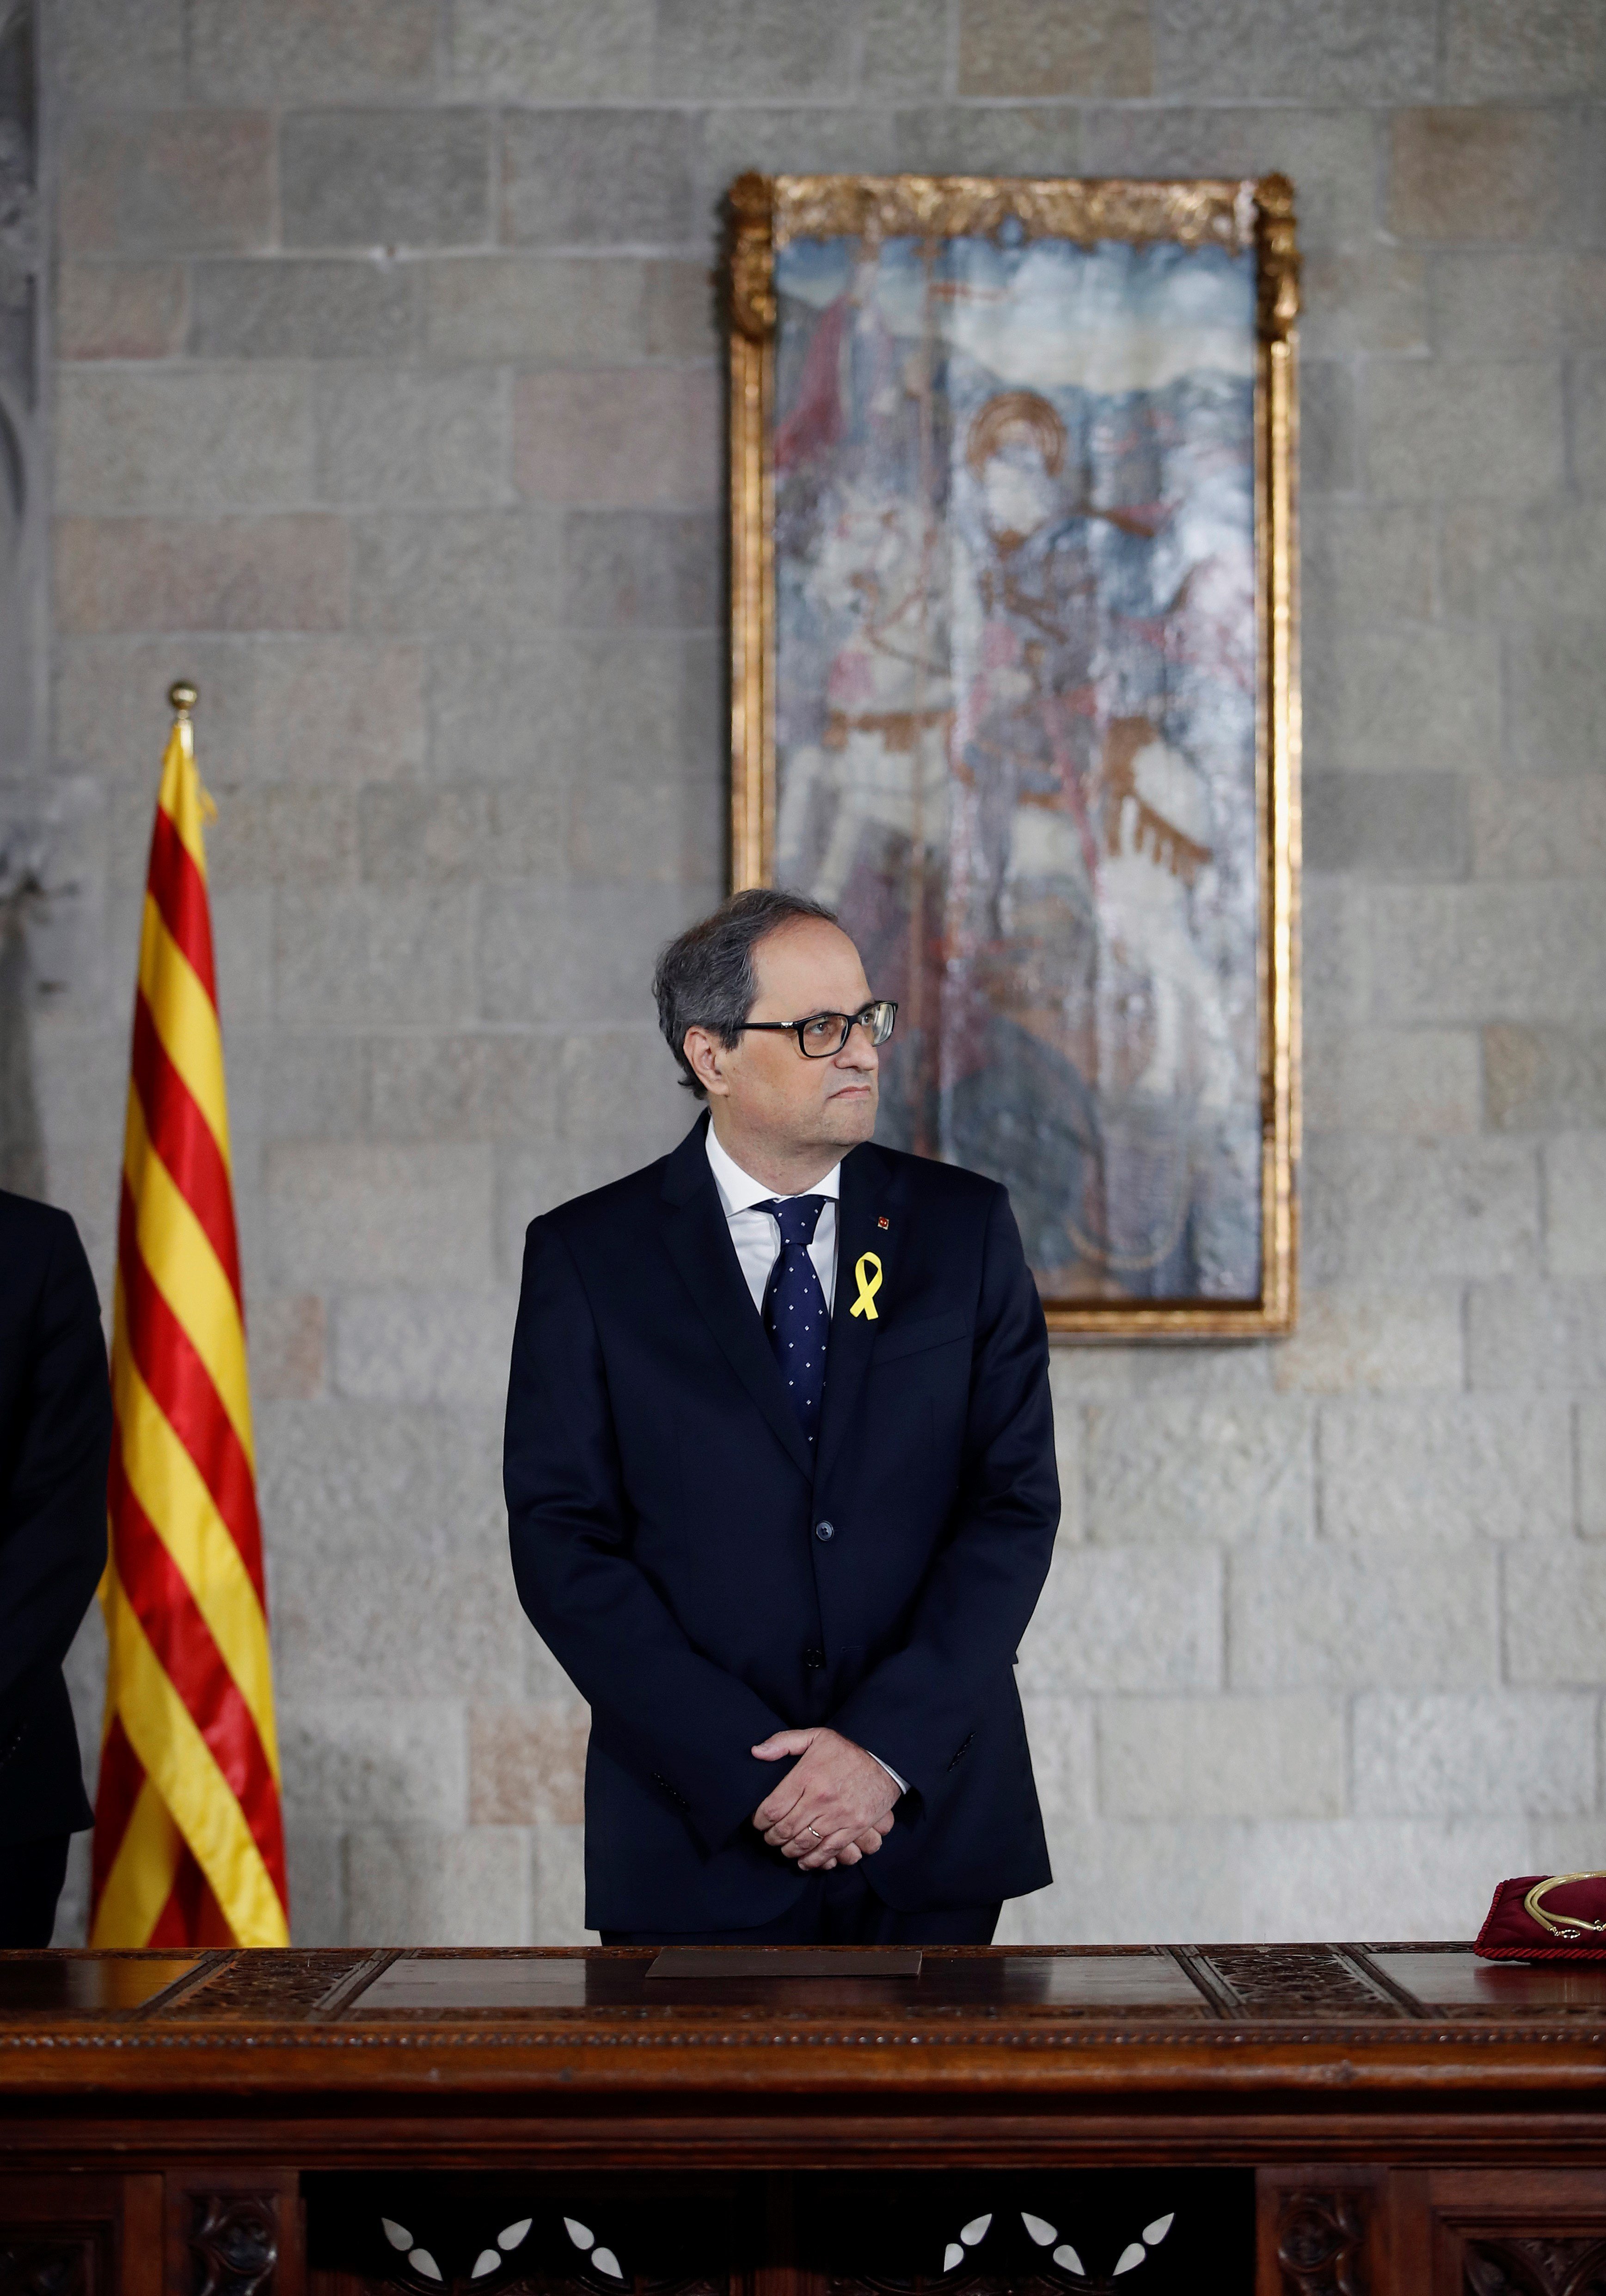 La carta en què Torra demana a Rajoy una reunió per dialogar "sense condicions"